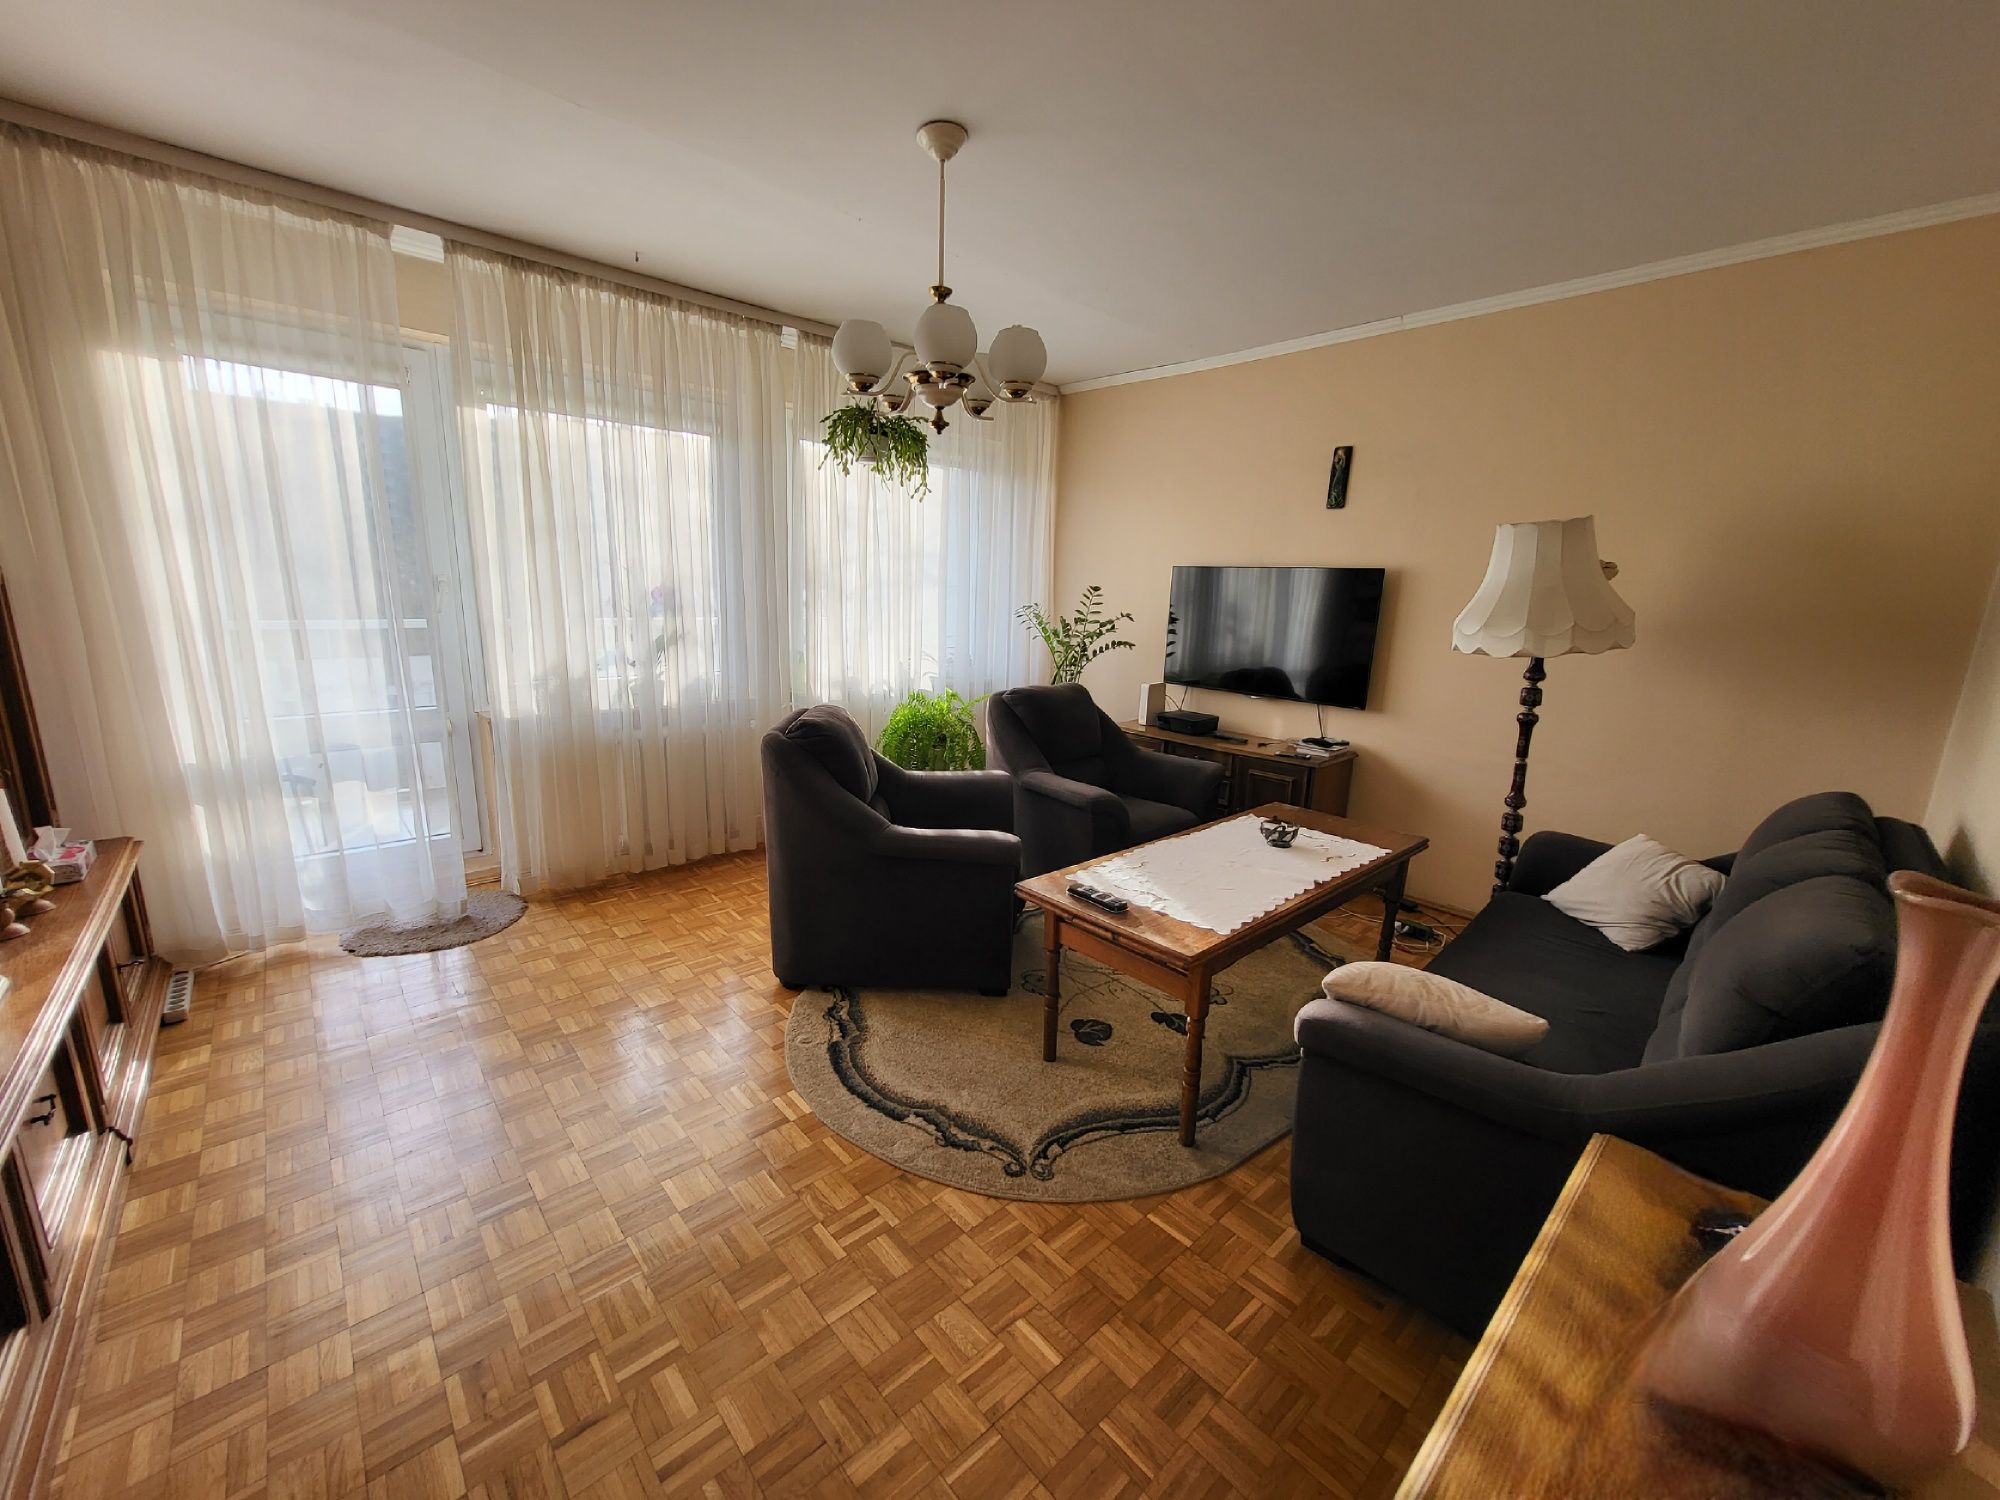 Wrocław mieszkanie 3 pokojowe - bez pośredników